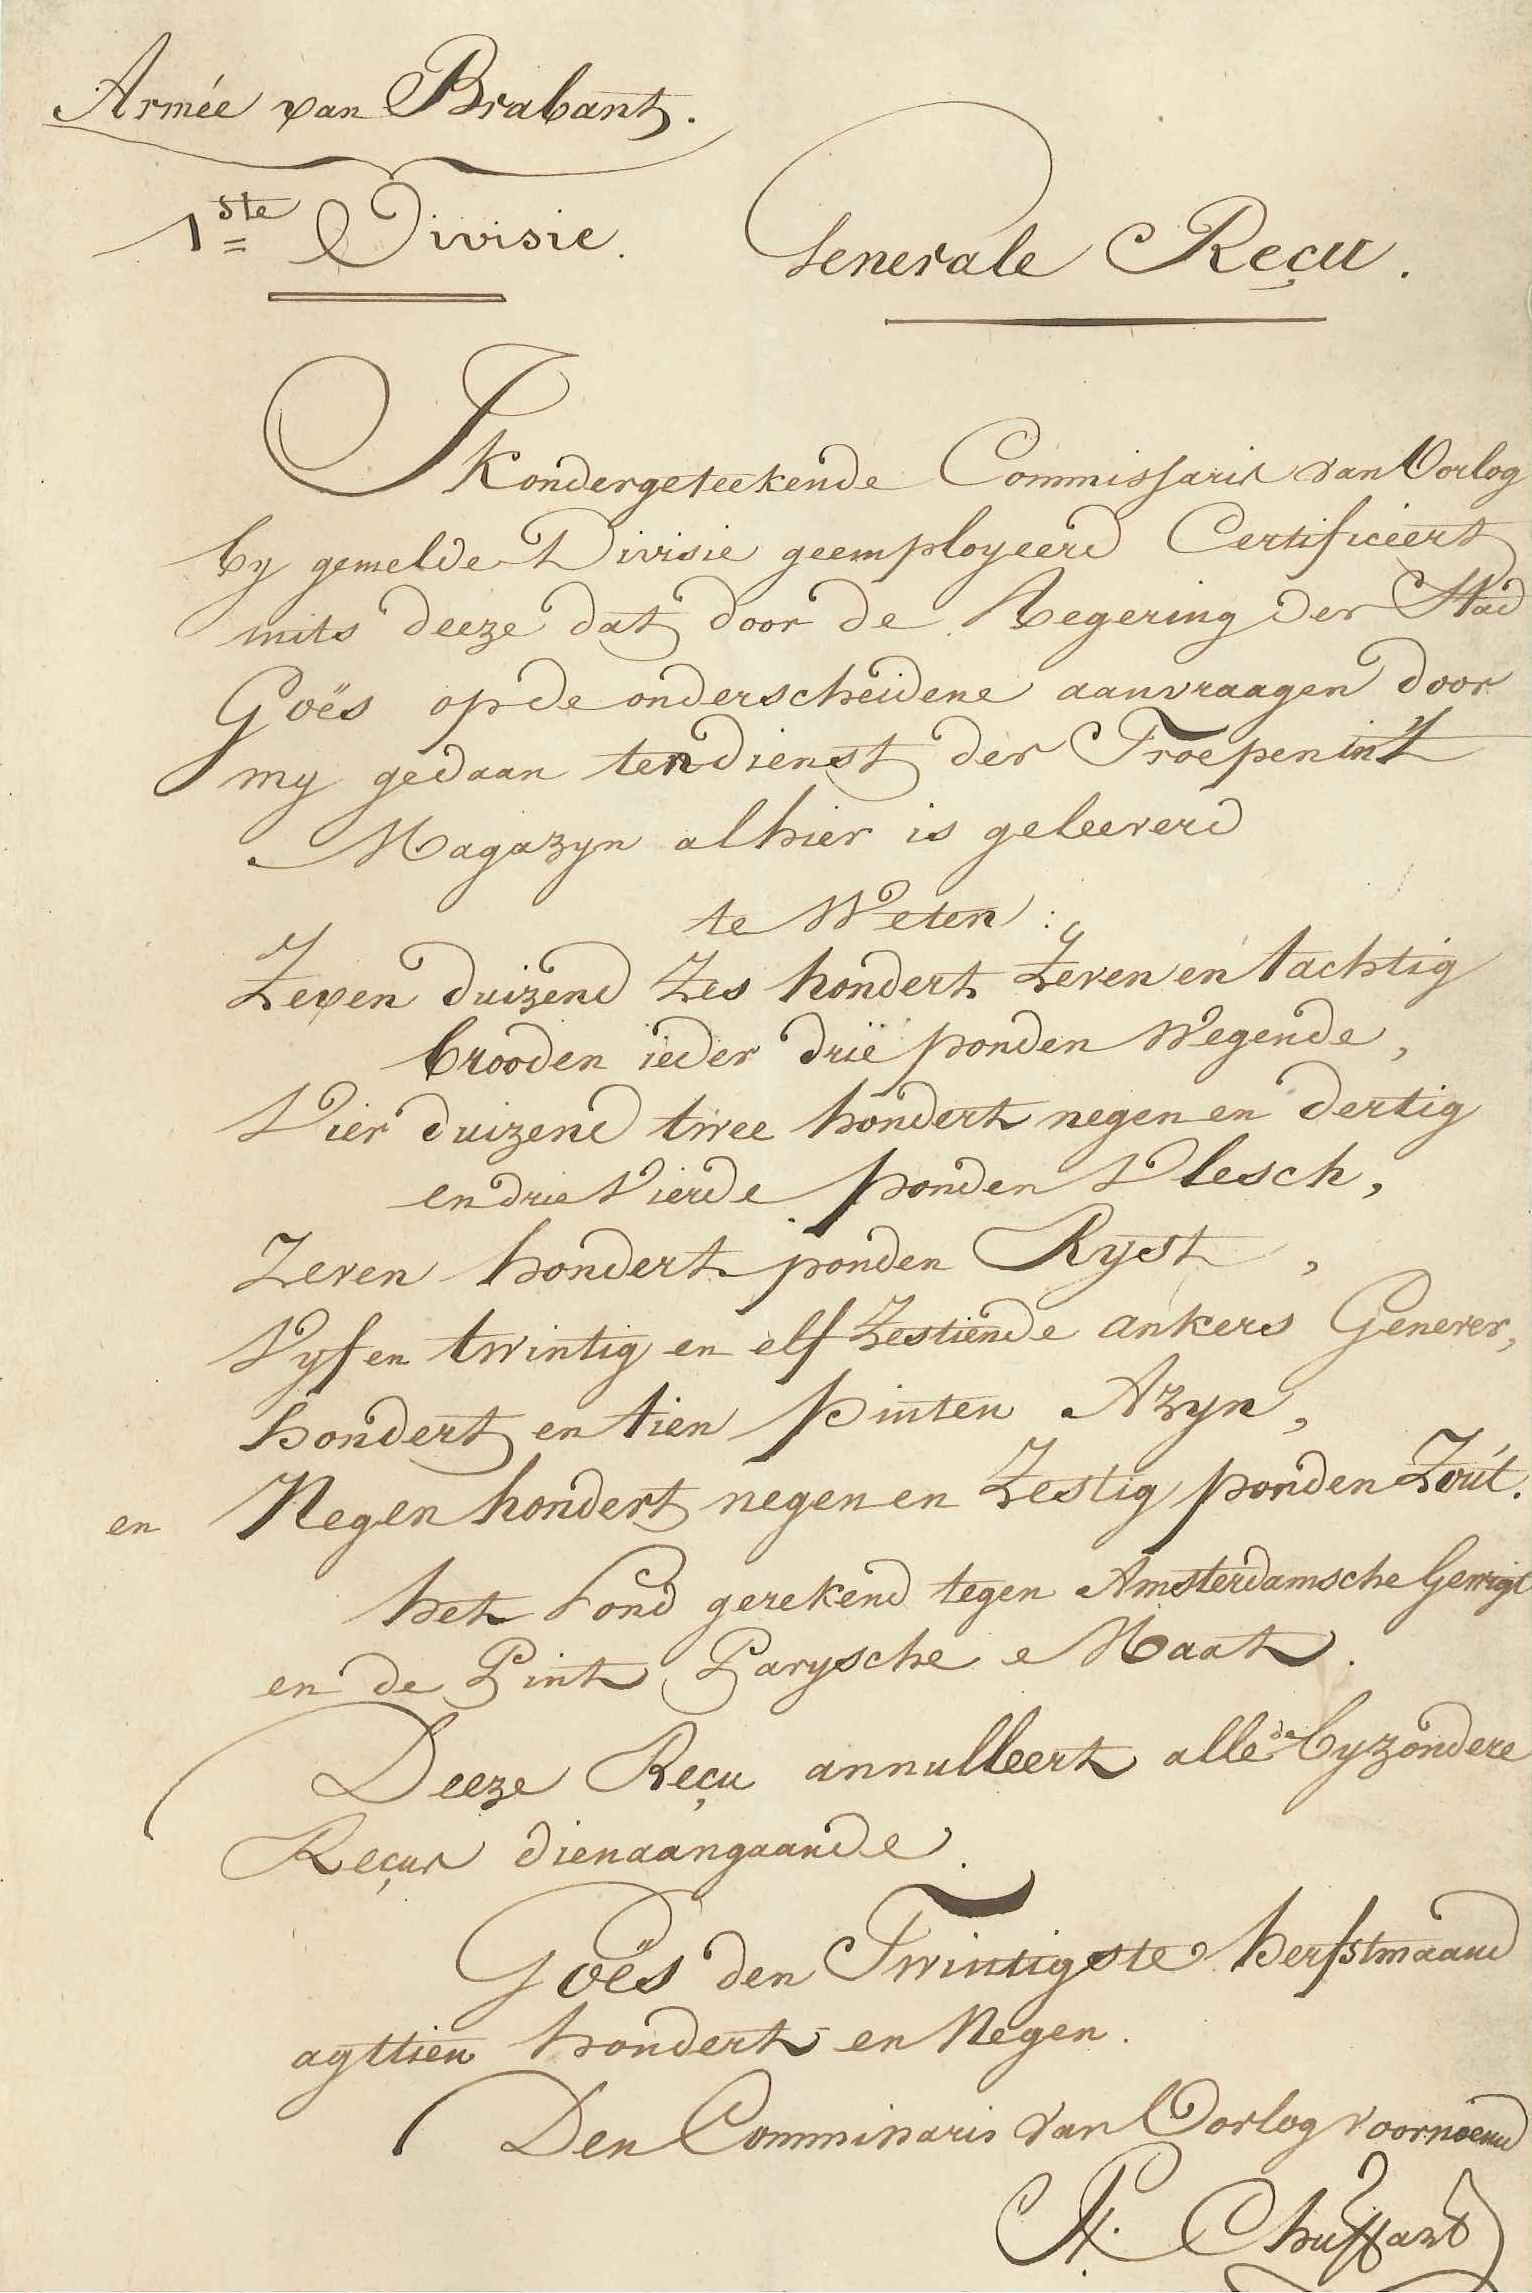 Verklaring van ontvangst door de armee van Brabant over leveringen door Goes, 1809.